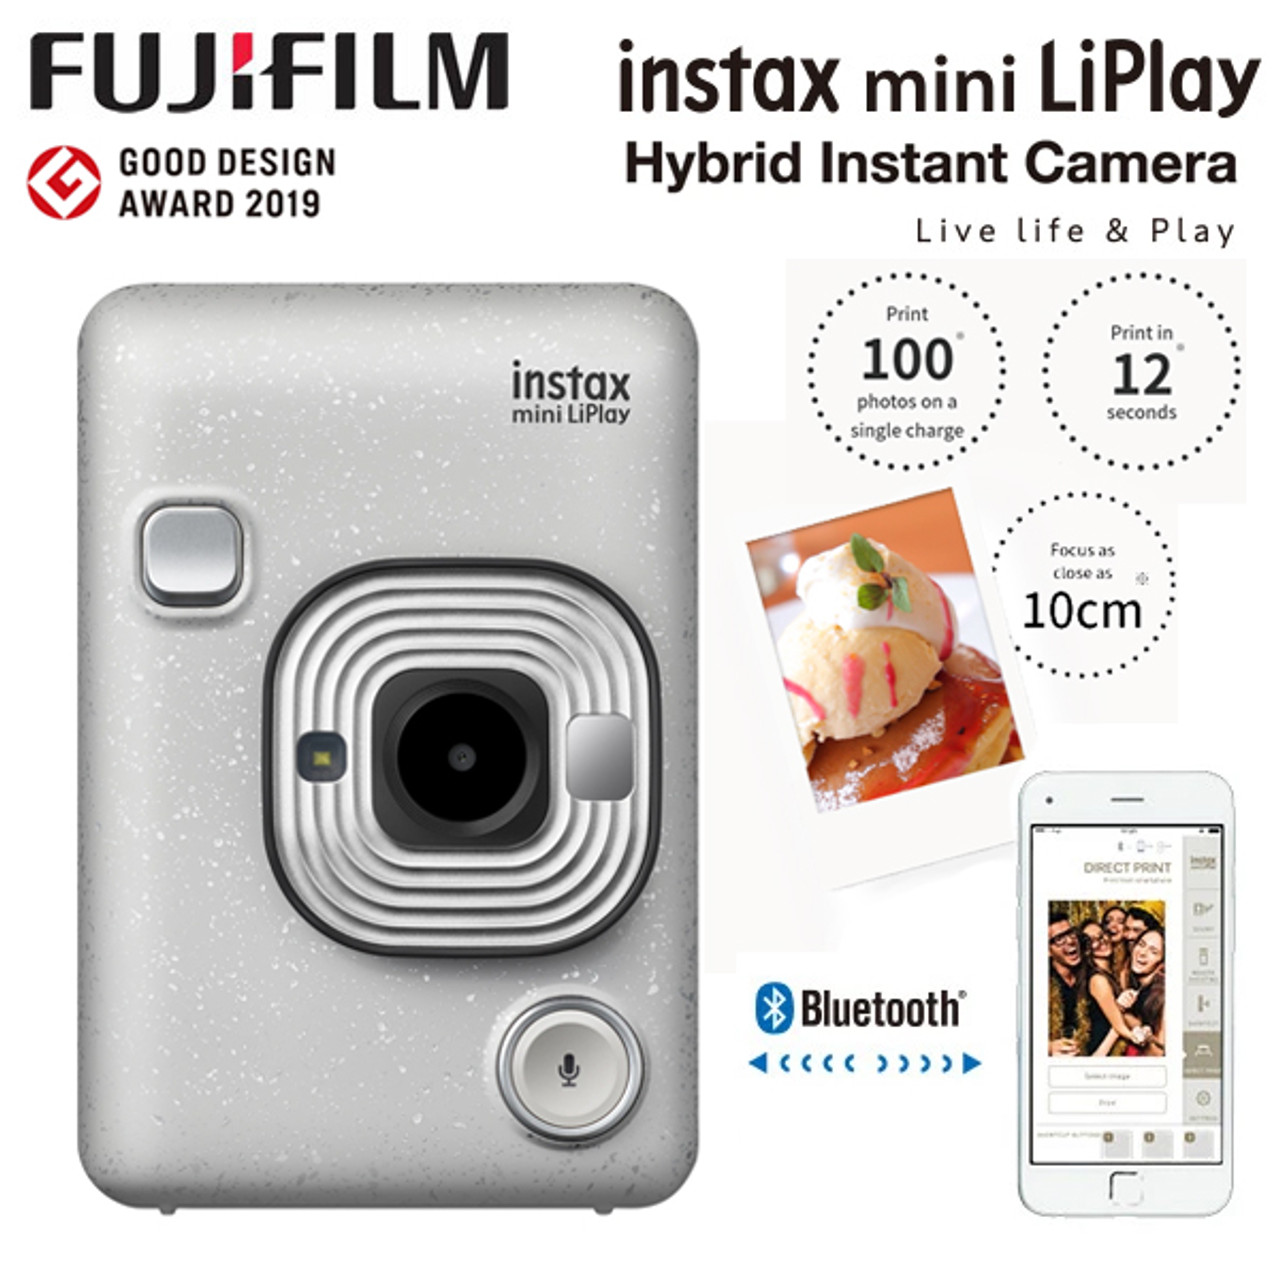 Fujifilm Instax Hybrid Mini Liplay, Stone White 